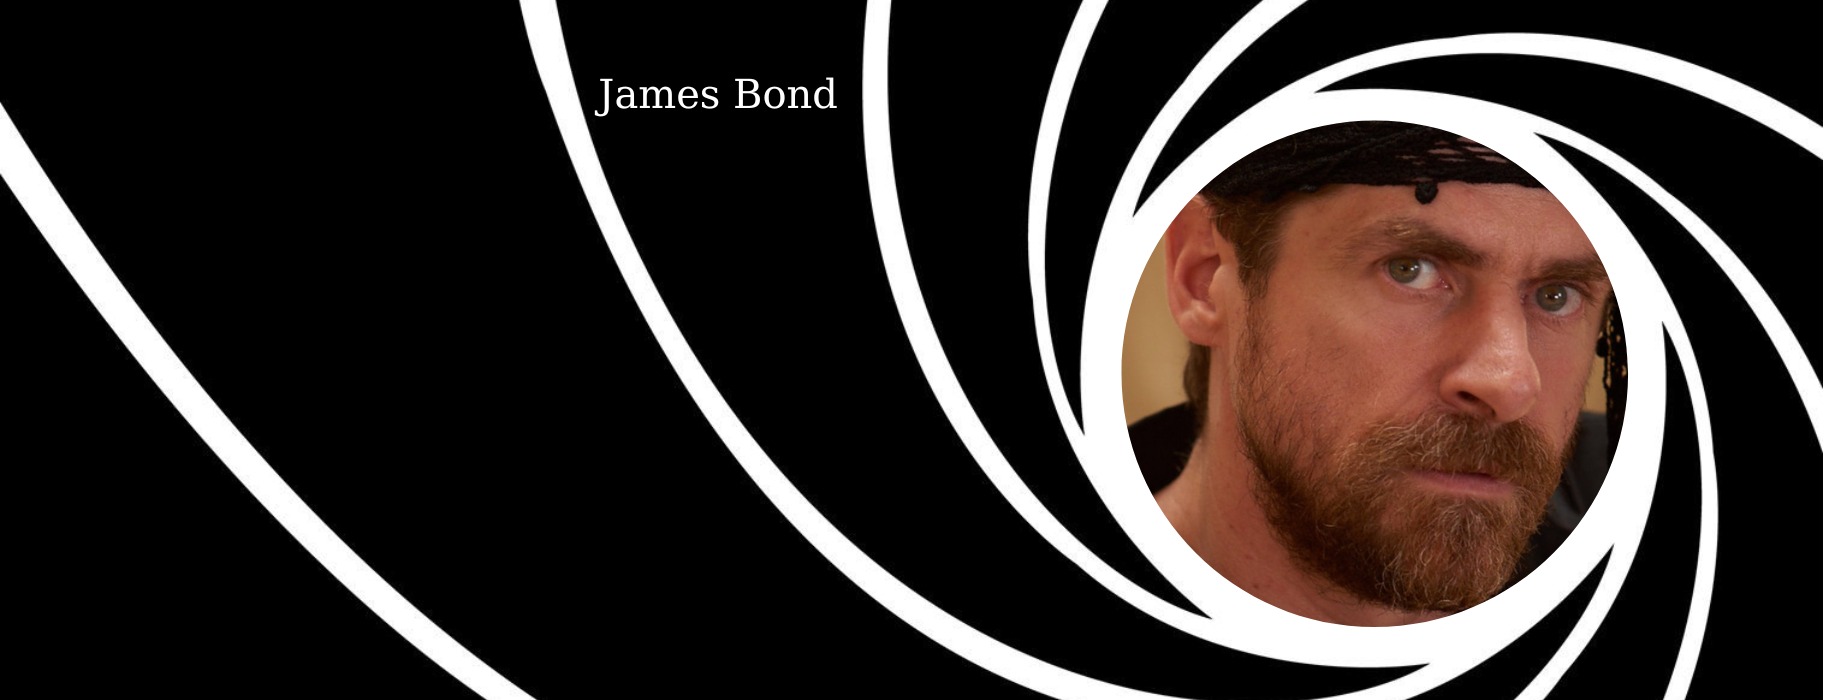 Δημήτρης Λάλος: Πρωταγωνιστεί σε βίντεο που θυμίζει ταινία James Bond στη Σαντορίνη